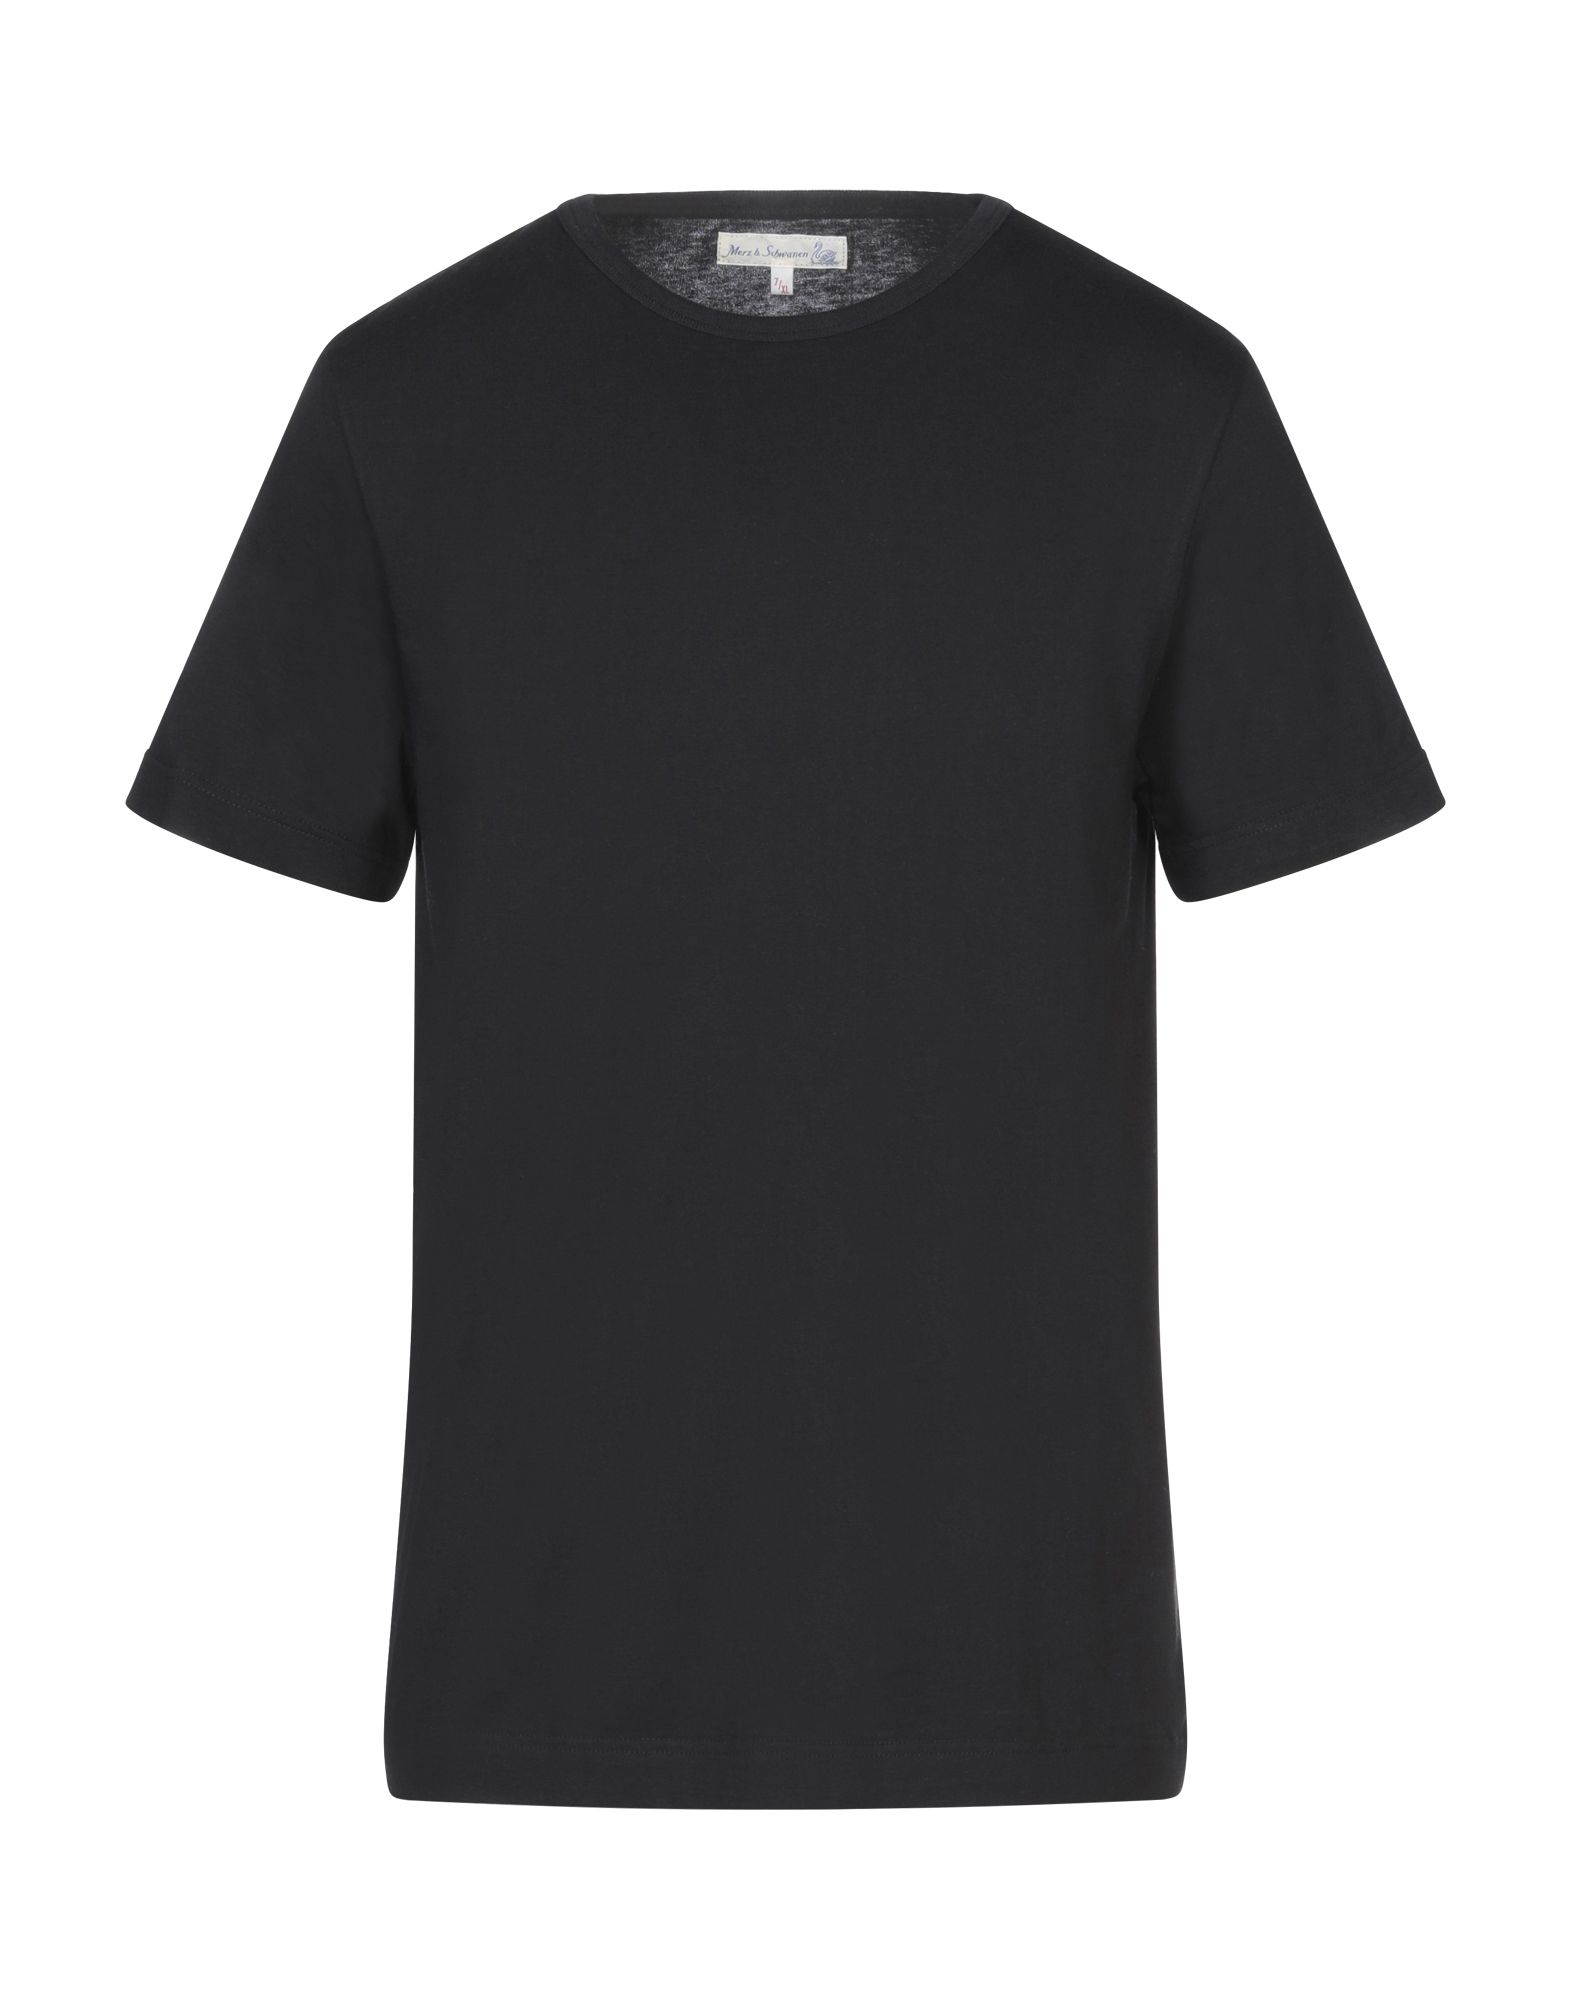 Merz B. Schwanen Black Crew Neck T Shirt | ModeSens